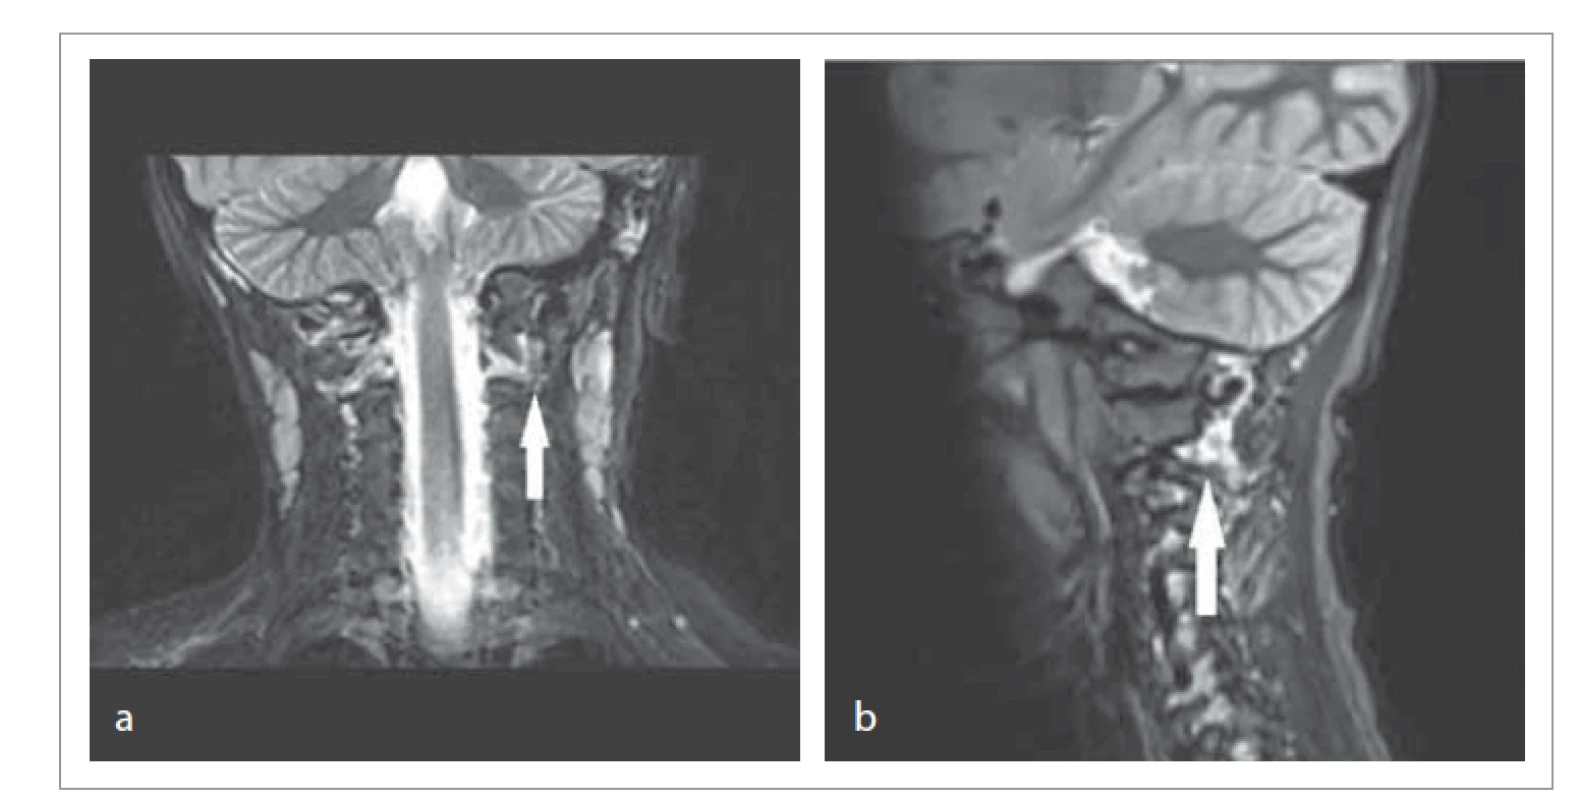 MR krku a páteře, STIR frekvence – prosáknutí měkkých tkání v okolí
atlantoaxiální subluxace (viz šipku).<br>
a) koronární projekce, b) sagitální projekce.<br>
Fig. 1. MRI of the neck and spine, STIR frequency – soft tissue infiltration around
the atlantoaxial subluxation (see arrow).<br>
a) coronary projection, b) sagittal projection.